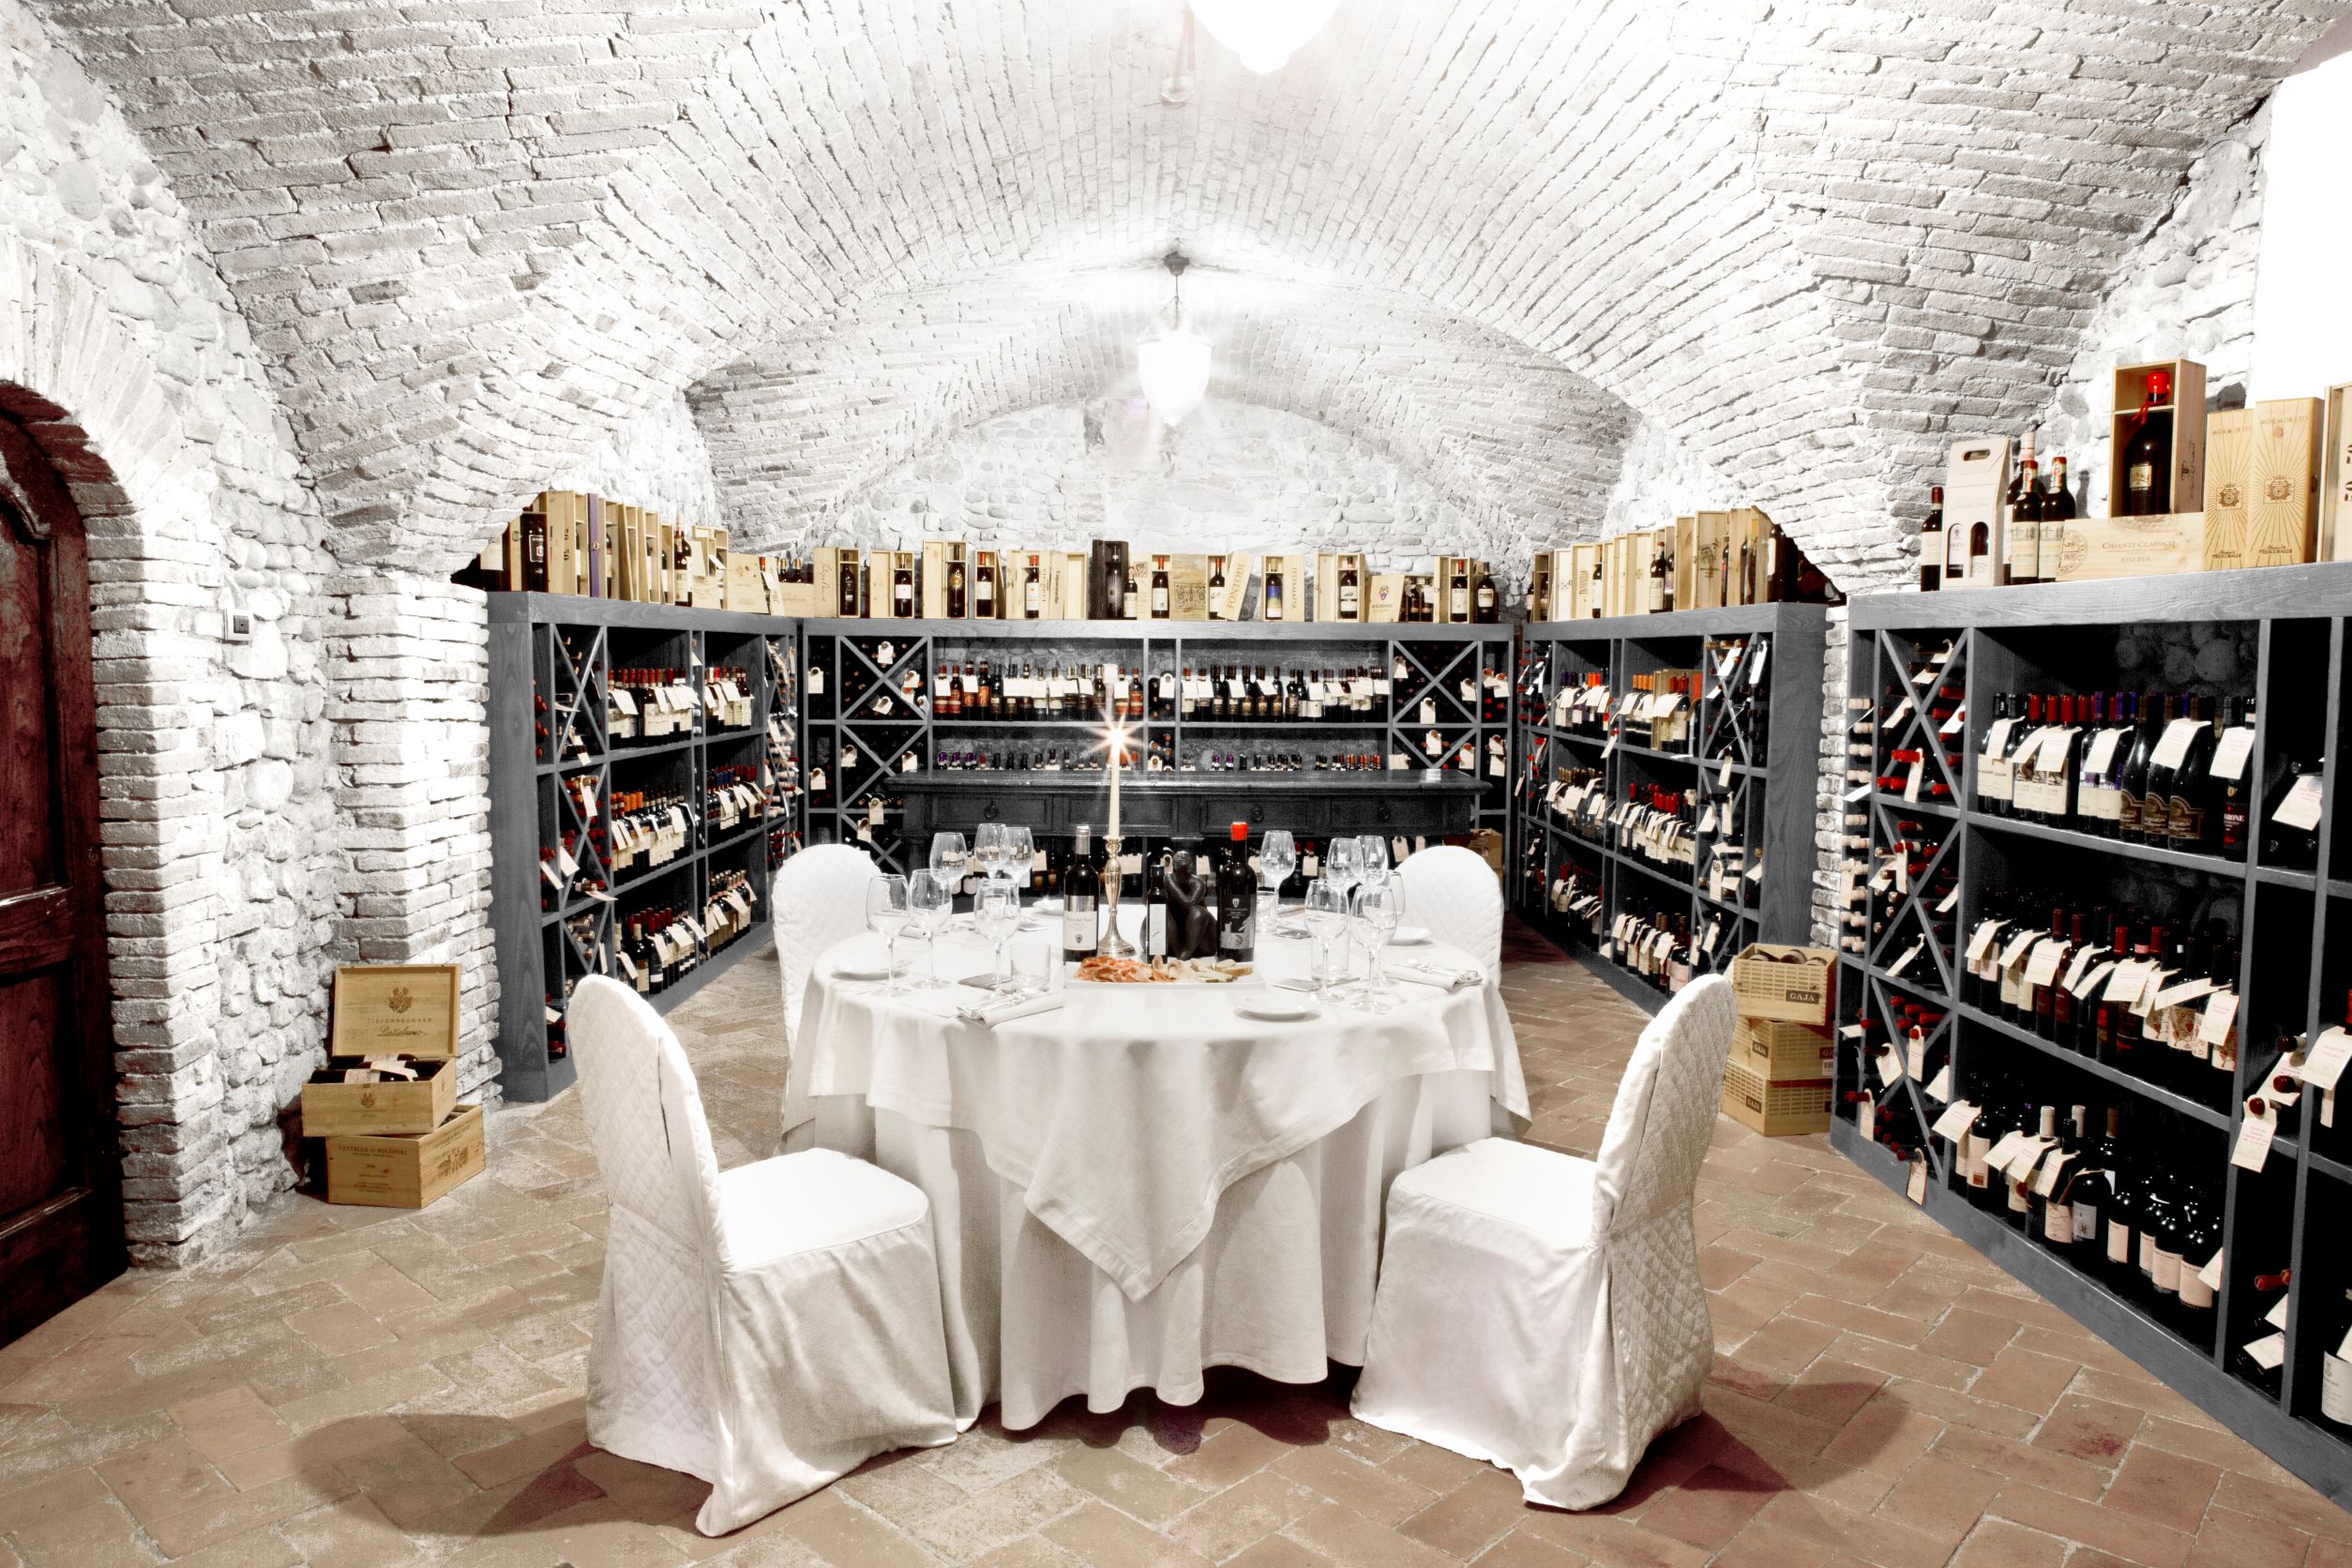 傳統酒窖延續其生命，持續提供義大利基安蒂地區的微醺。